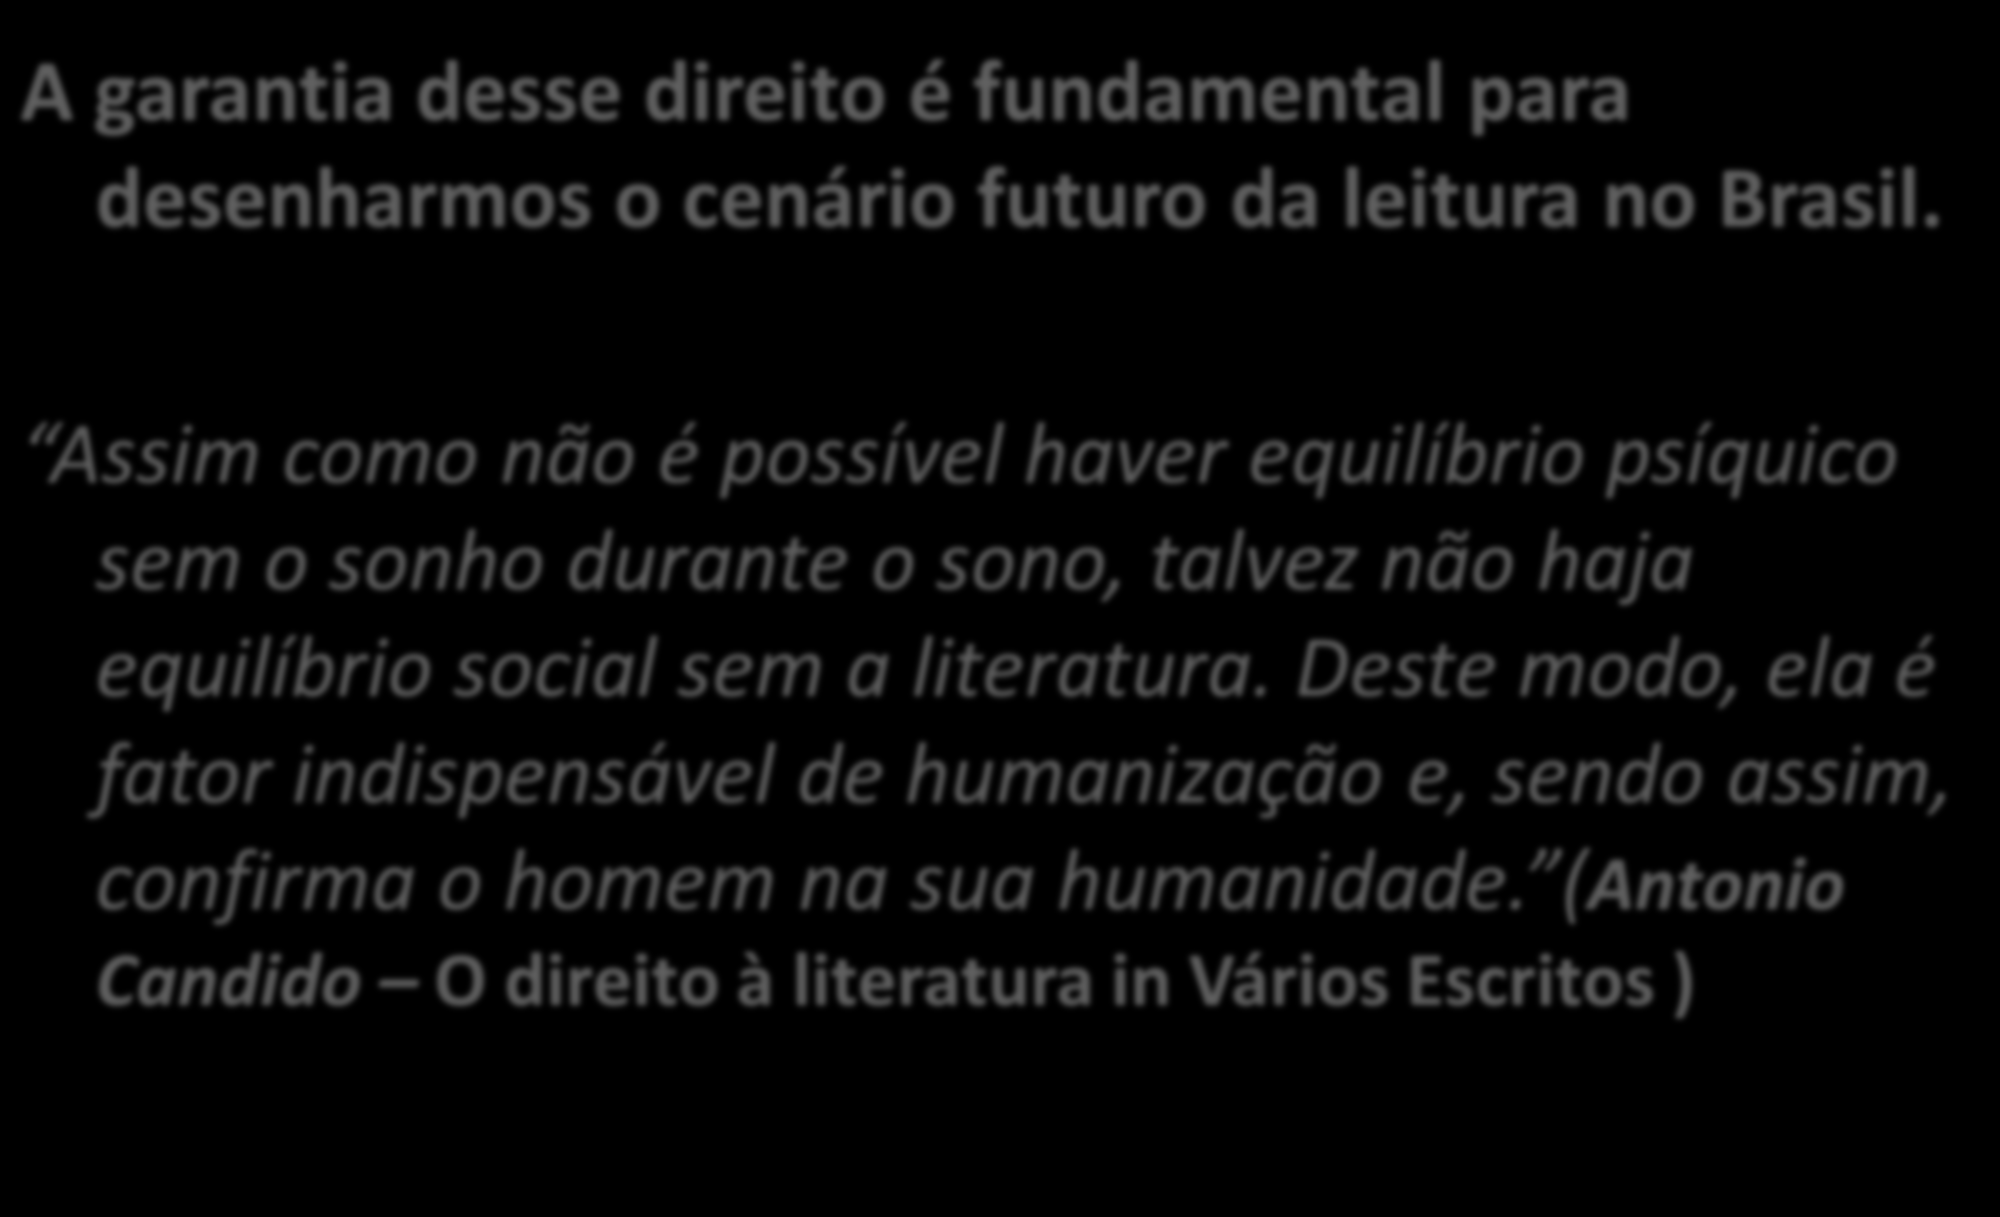 O direito a descobrir a literatura A garantia desse direito é fundamental para desenharmos o cenário futuro da leitura no Brasil.